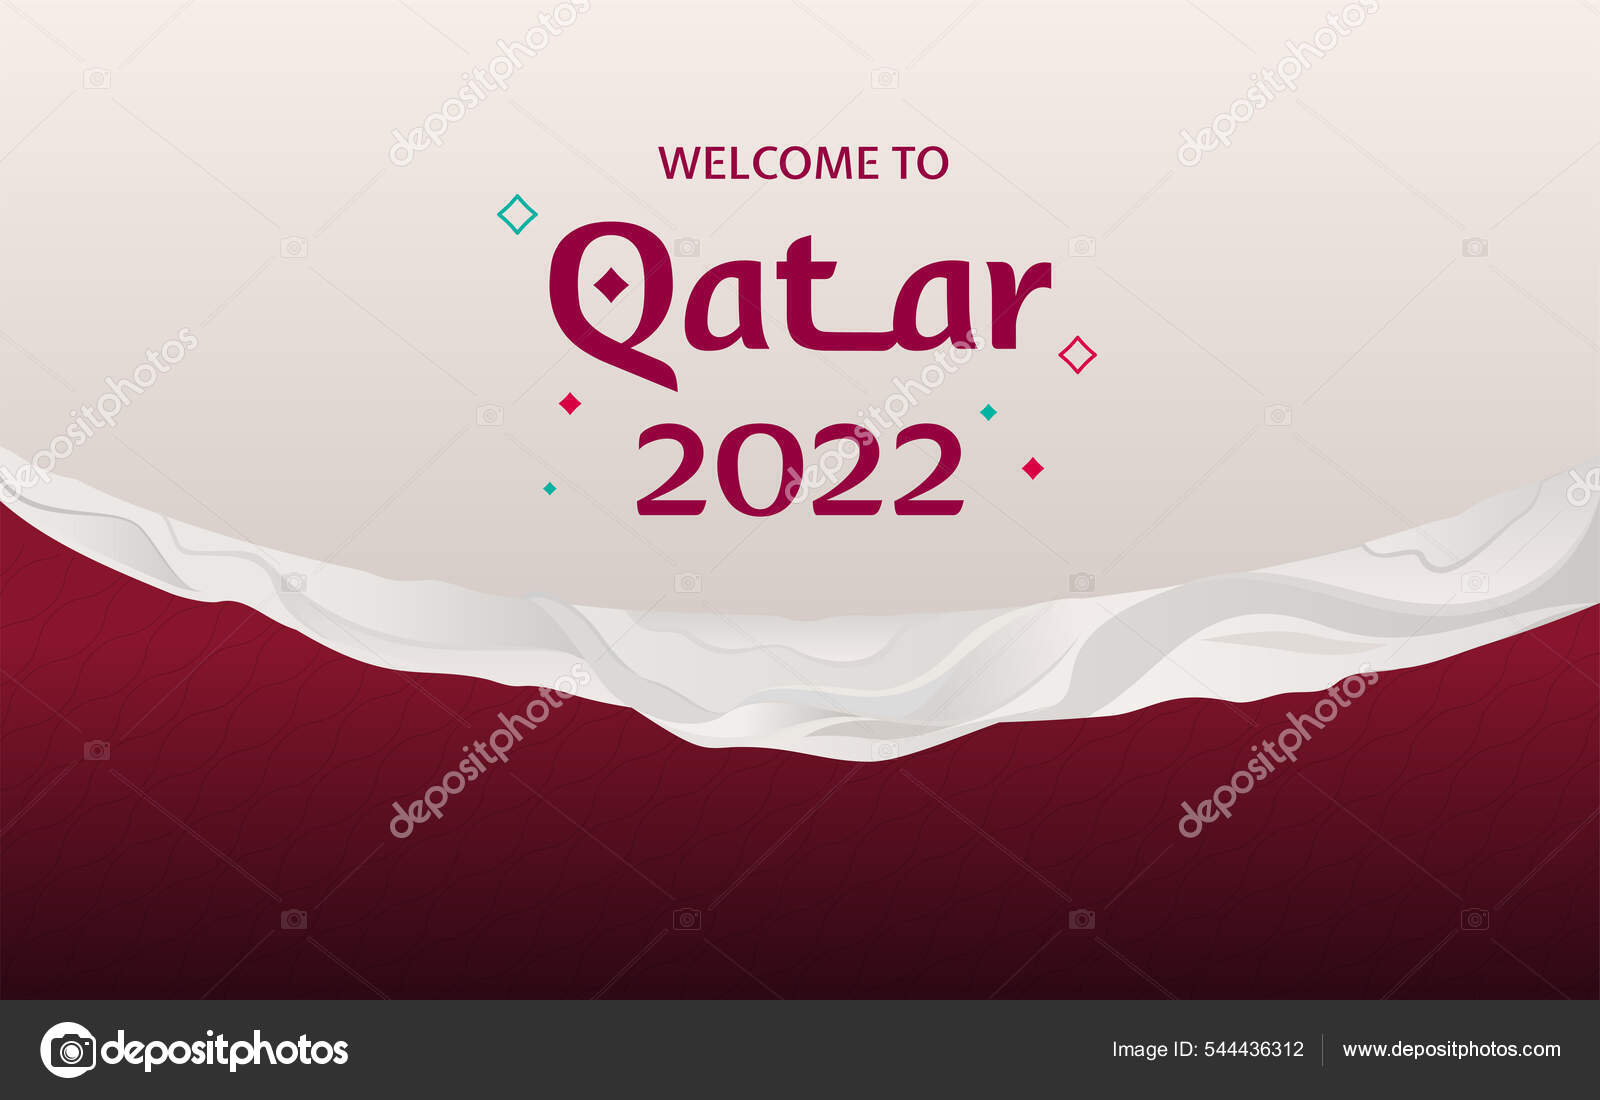 Thiết kế nền tảng Qatar World Cup 2022: Thiết kế nền tảng Qatar World Cup 2022 chắc chắn sẽ đem đến cho bạn những trải nghiệm hoàn toàn mới lạ. Với công nghệ tiên tiến và thiết kế tinh tế, sân vận động Qatar sẽ là một điểm đến không thể bỏ qua cho những ai yêu thích bóng đá.